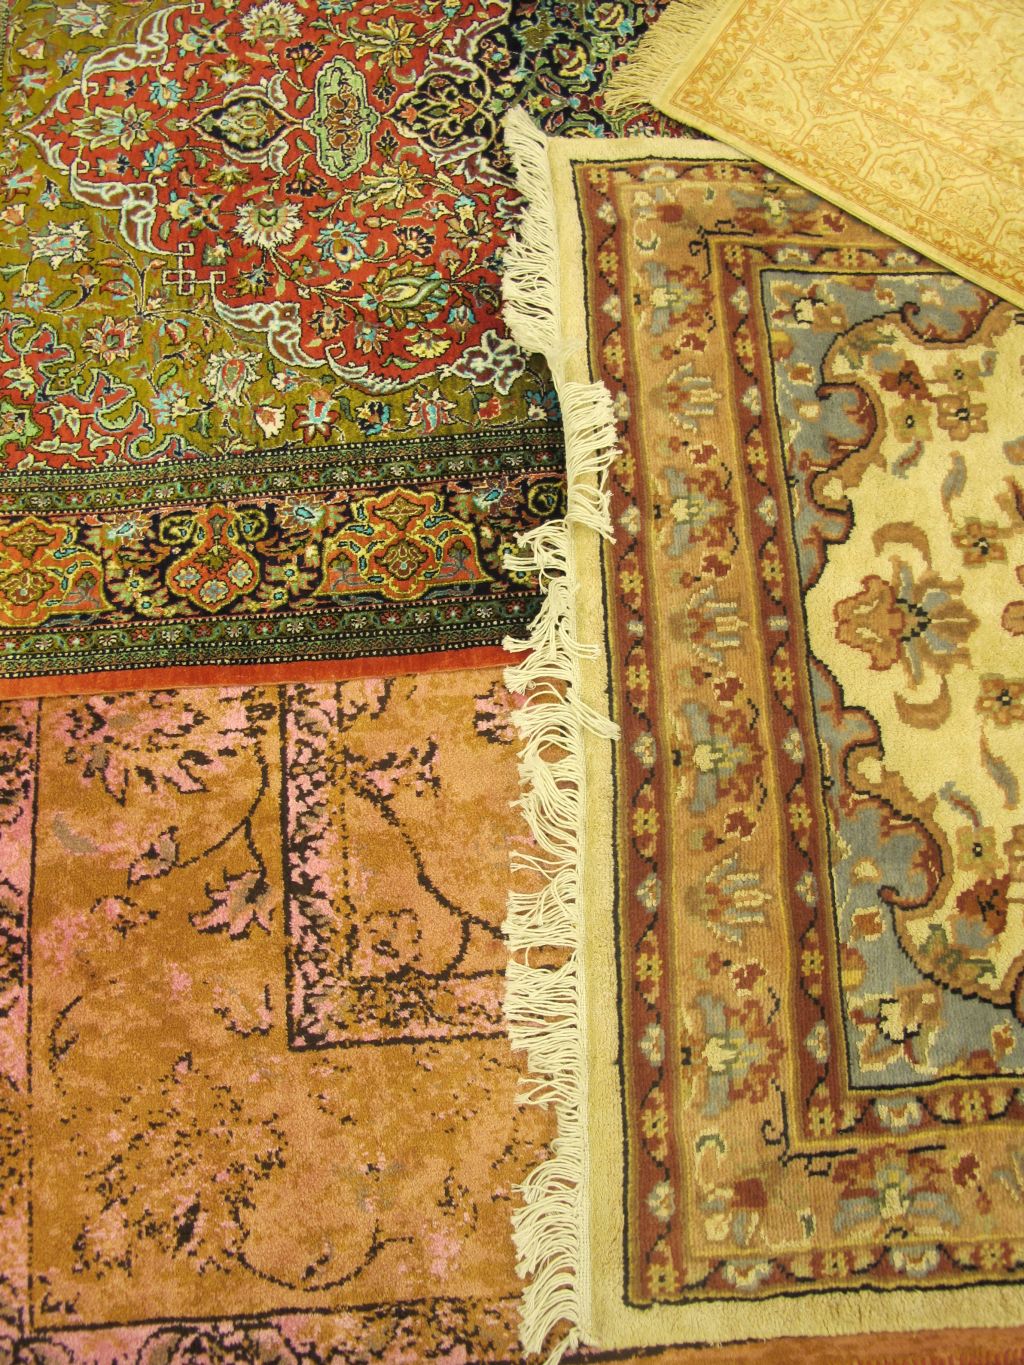 Detalii cu covoare din matase provenienta Pakistan de la Flying Carpets